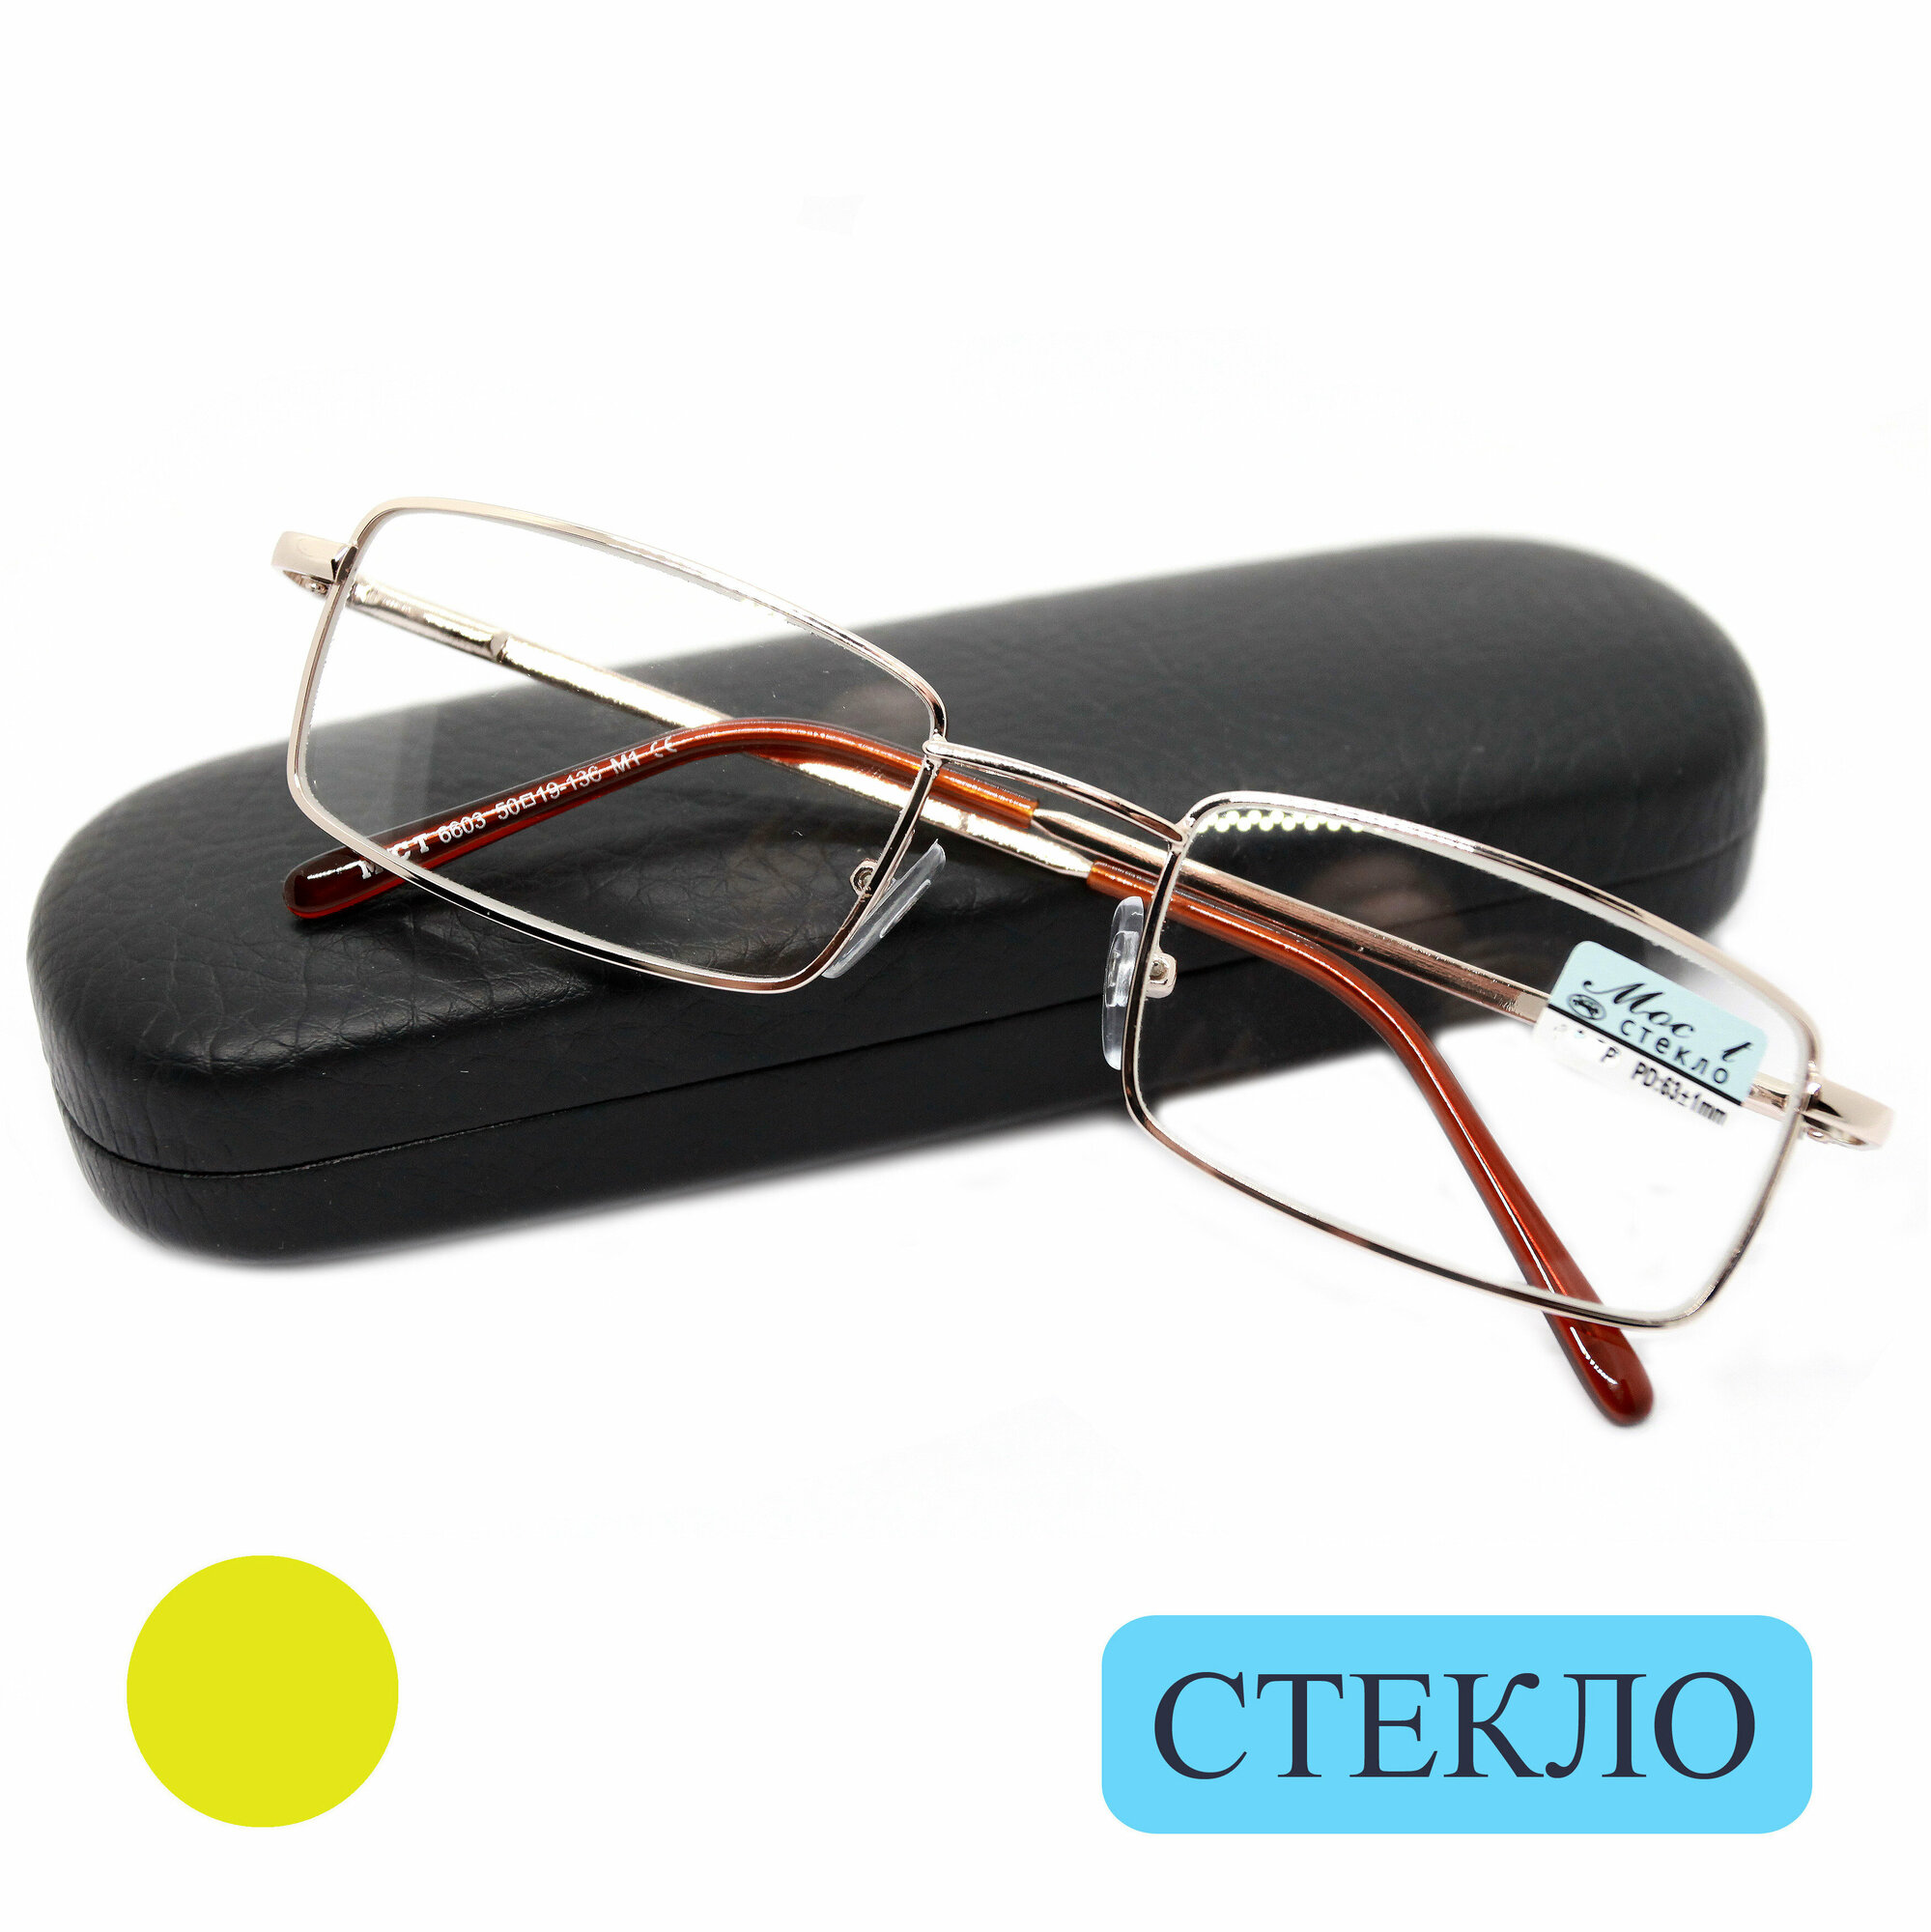 Готовые очки со стеклом (+0.50) с футляром, мост 6603 M1, линза стекло, цвет золотой, РЦ 62-64